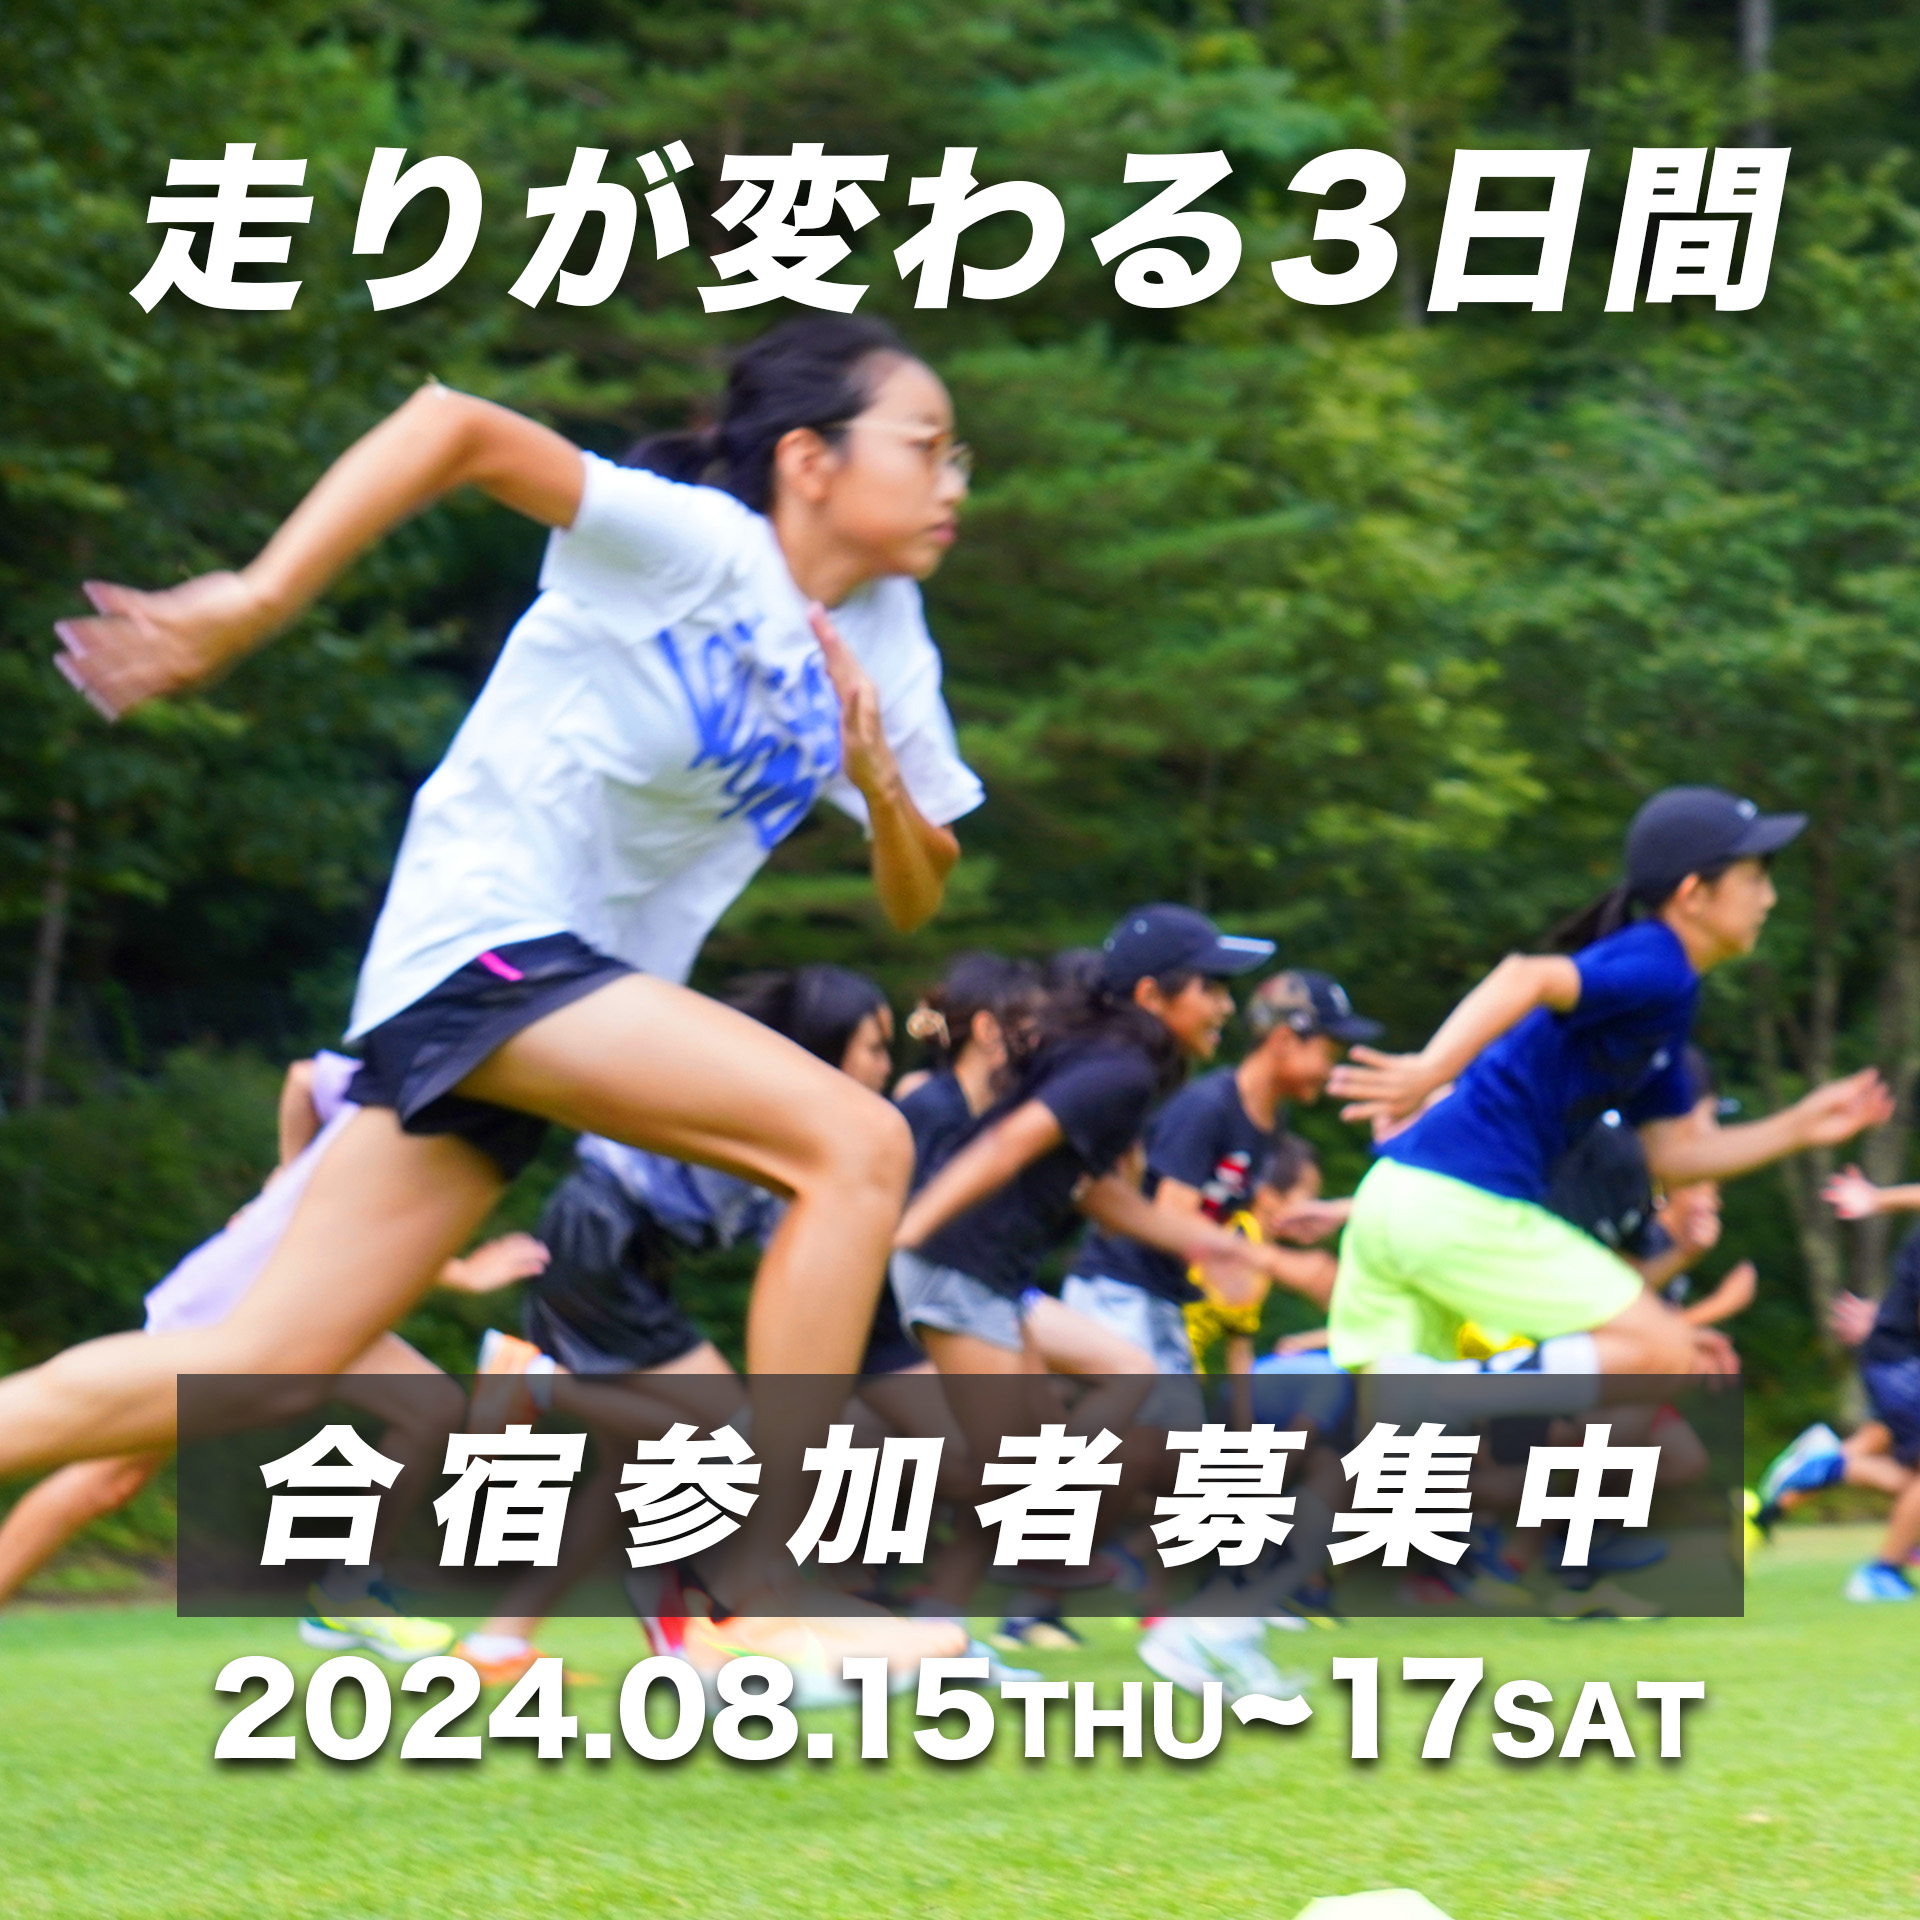 走りが変わる3日間。合宿参加者募集中。開催は2024年8月15日〜17日。